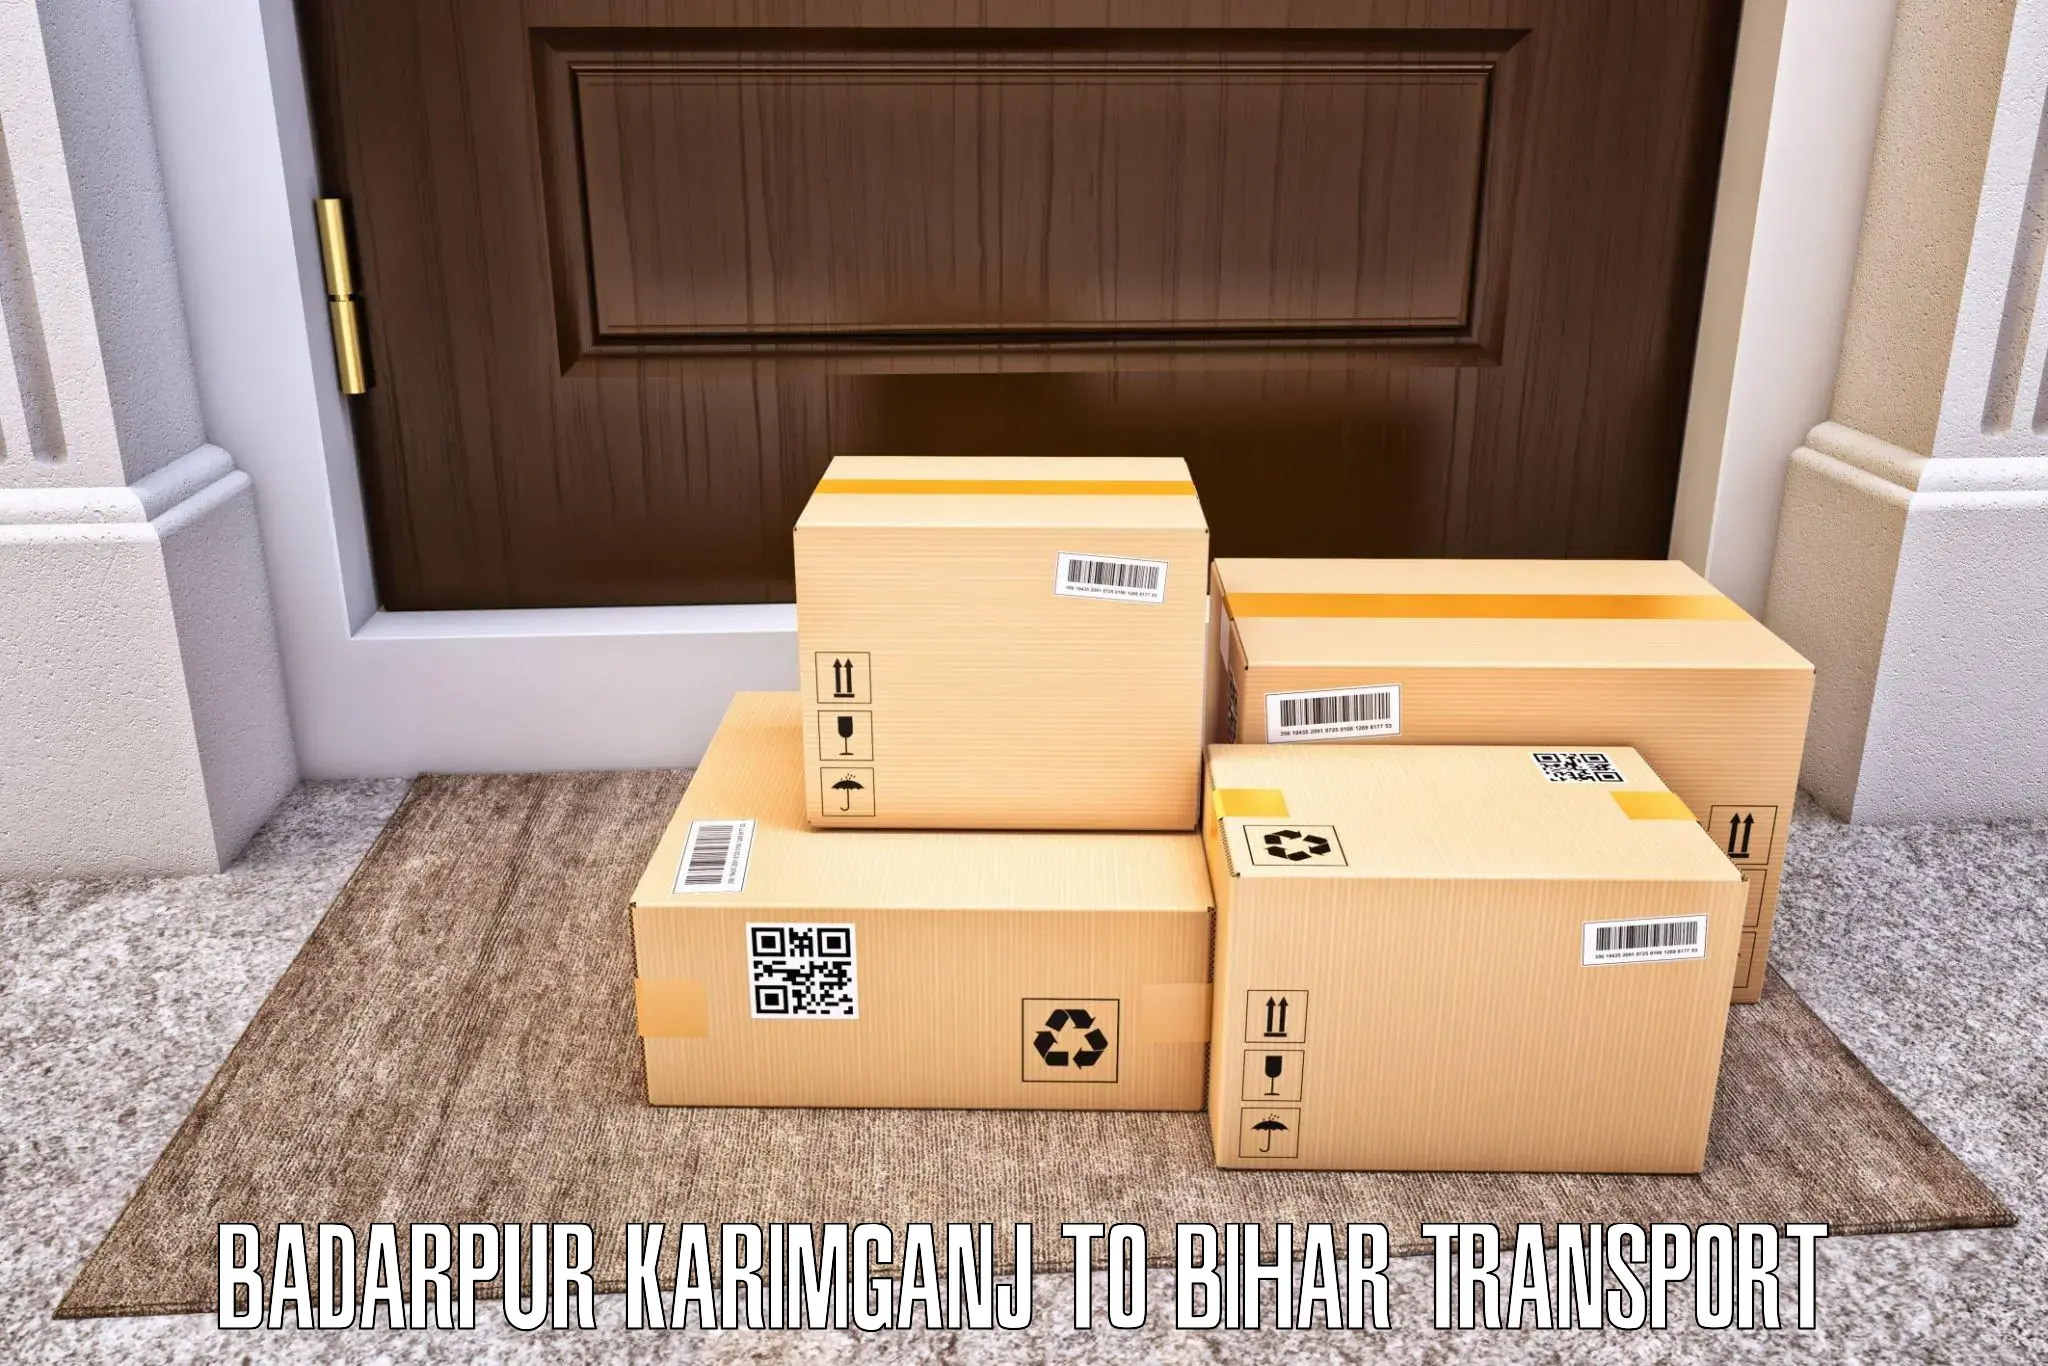 Lorry transport service Badarpur Karimganj to Khizarsarai